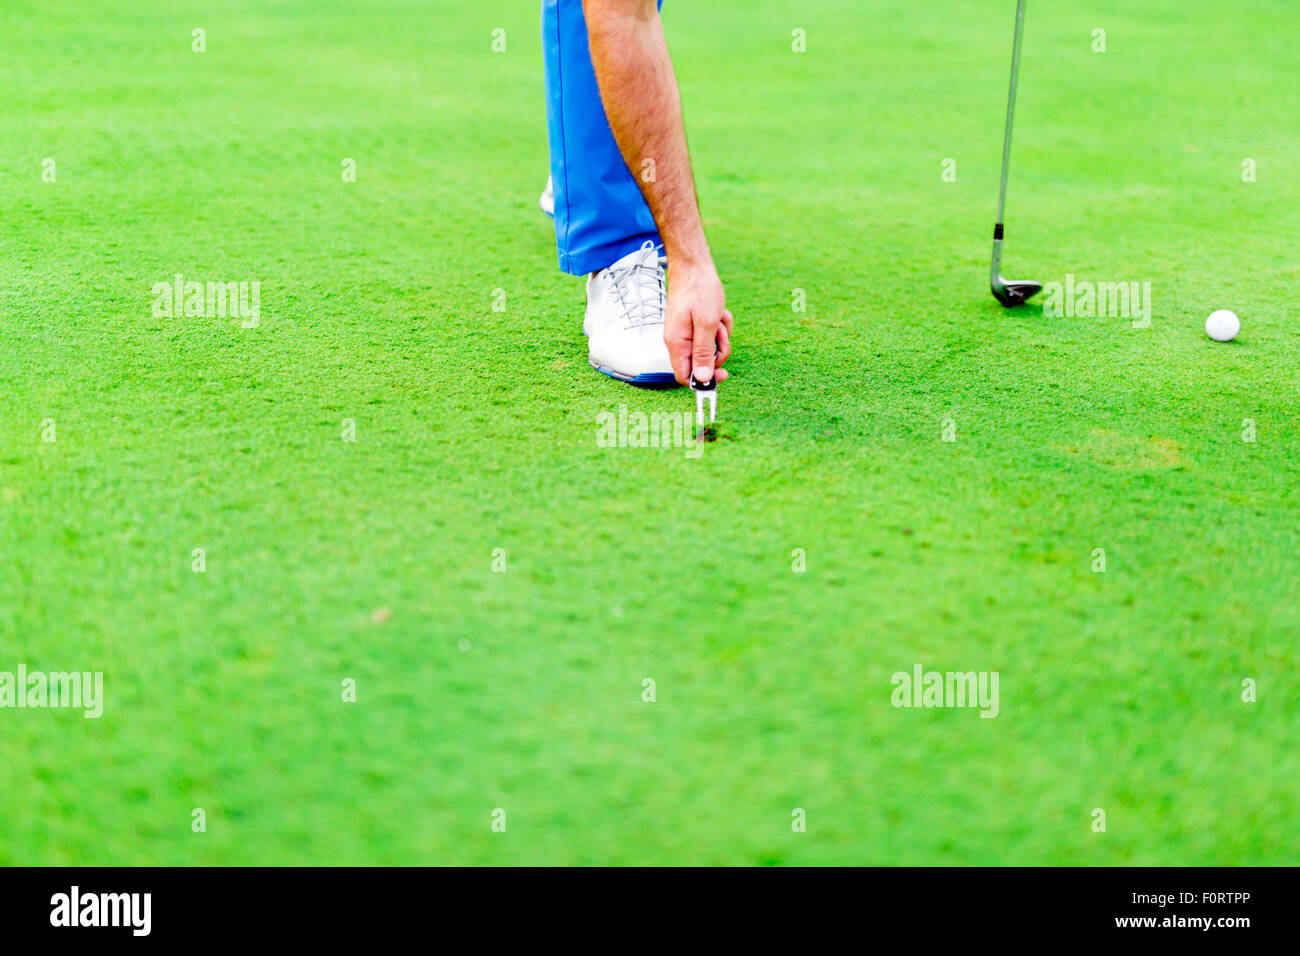 Joueur de golf réparation divot sur une surface d'herbe verte Banque D'Images